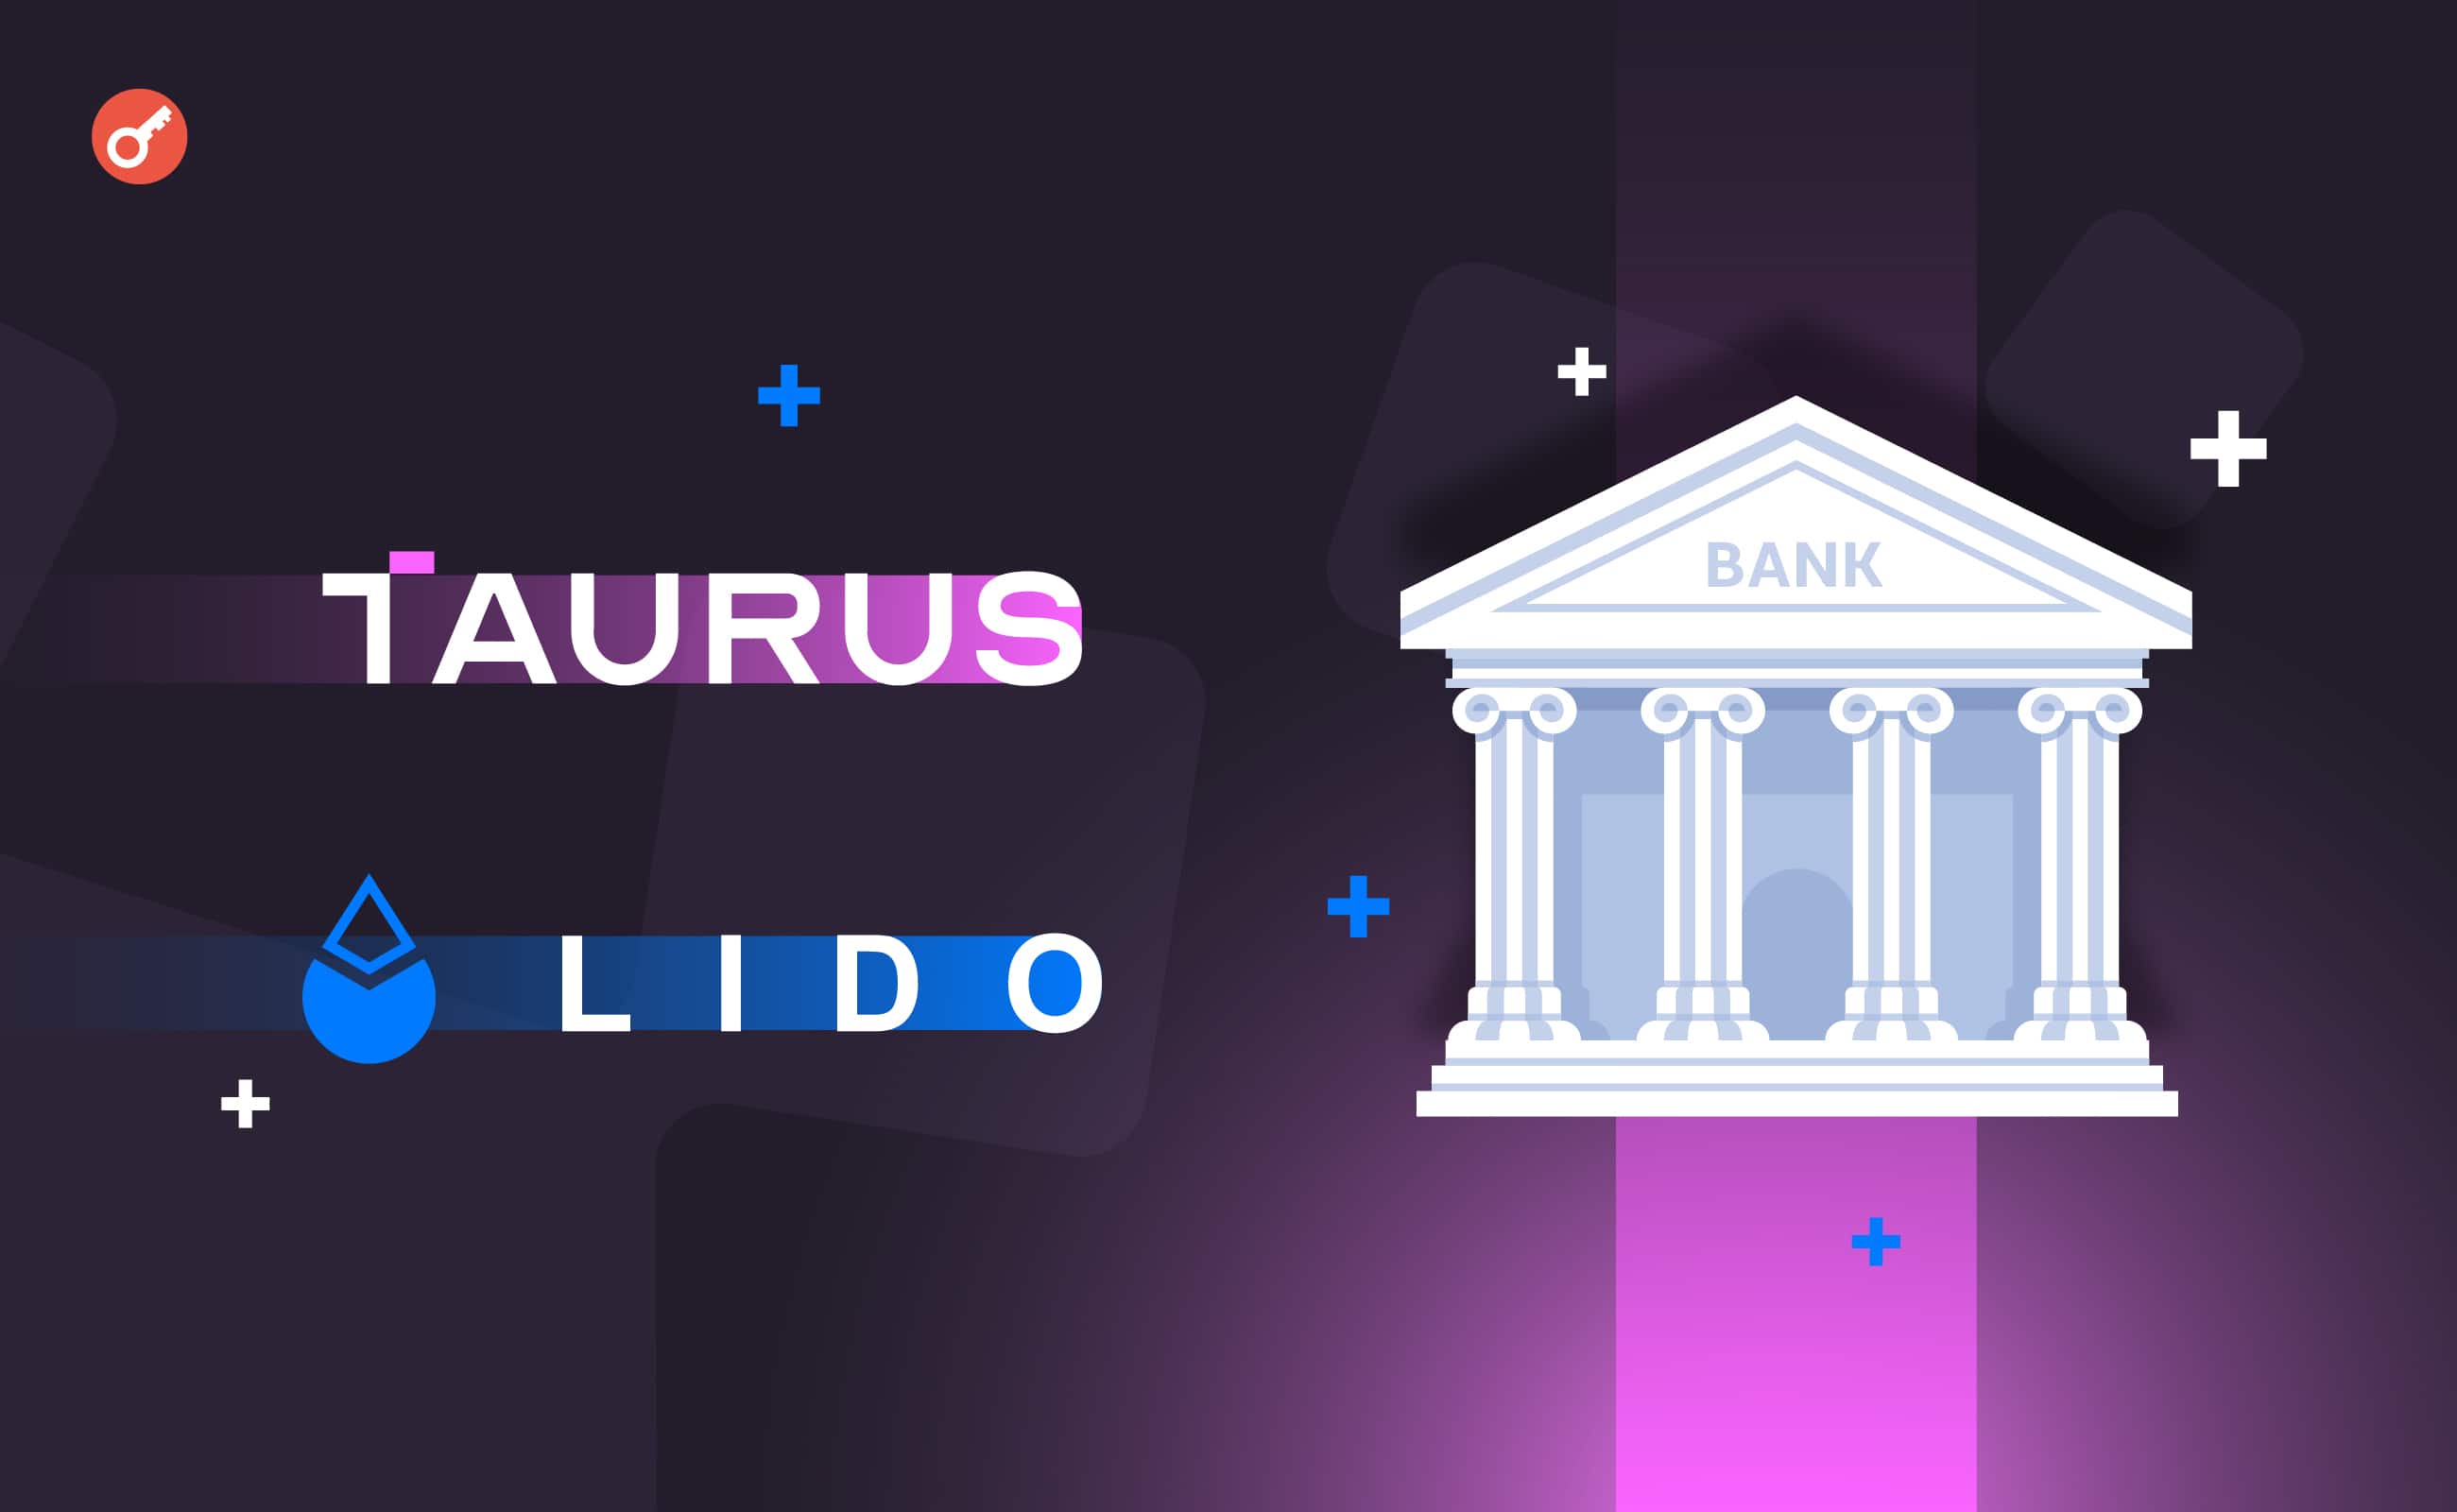 Taurus заключила партнерство с Lido Finance для предоставления банкам услуг стейкинга. Заглавный коллаж новости.